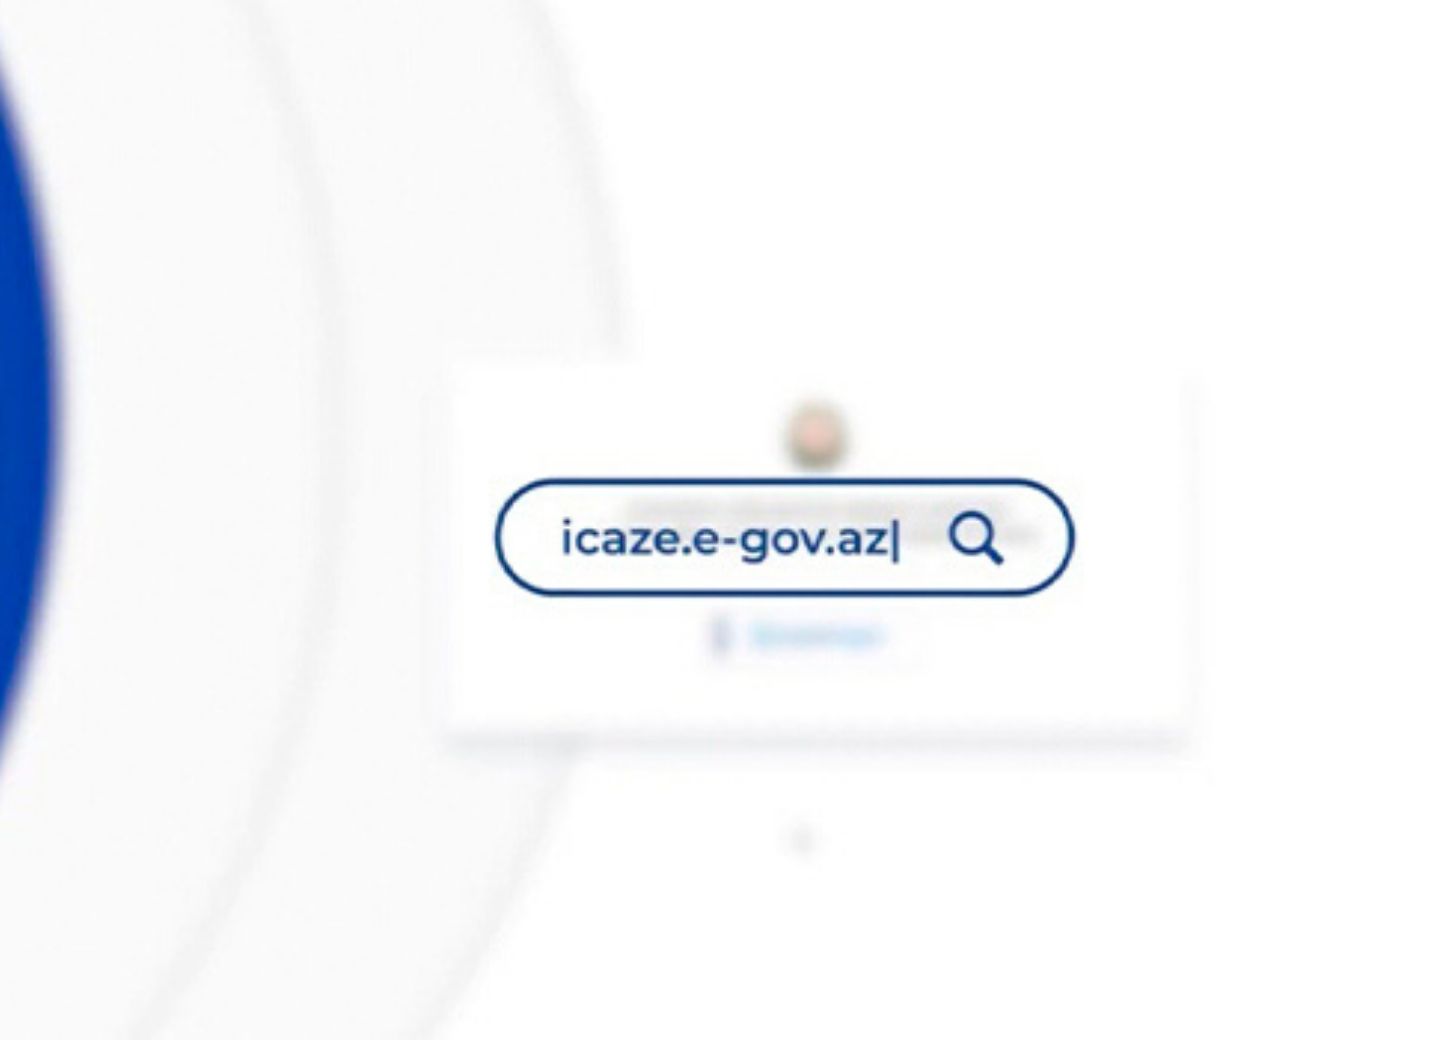 Работников этих сфер коснулось аннулирование части разрешений на портале icaze.e-gov.az – СПИСОК